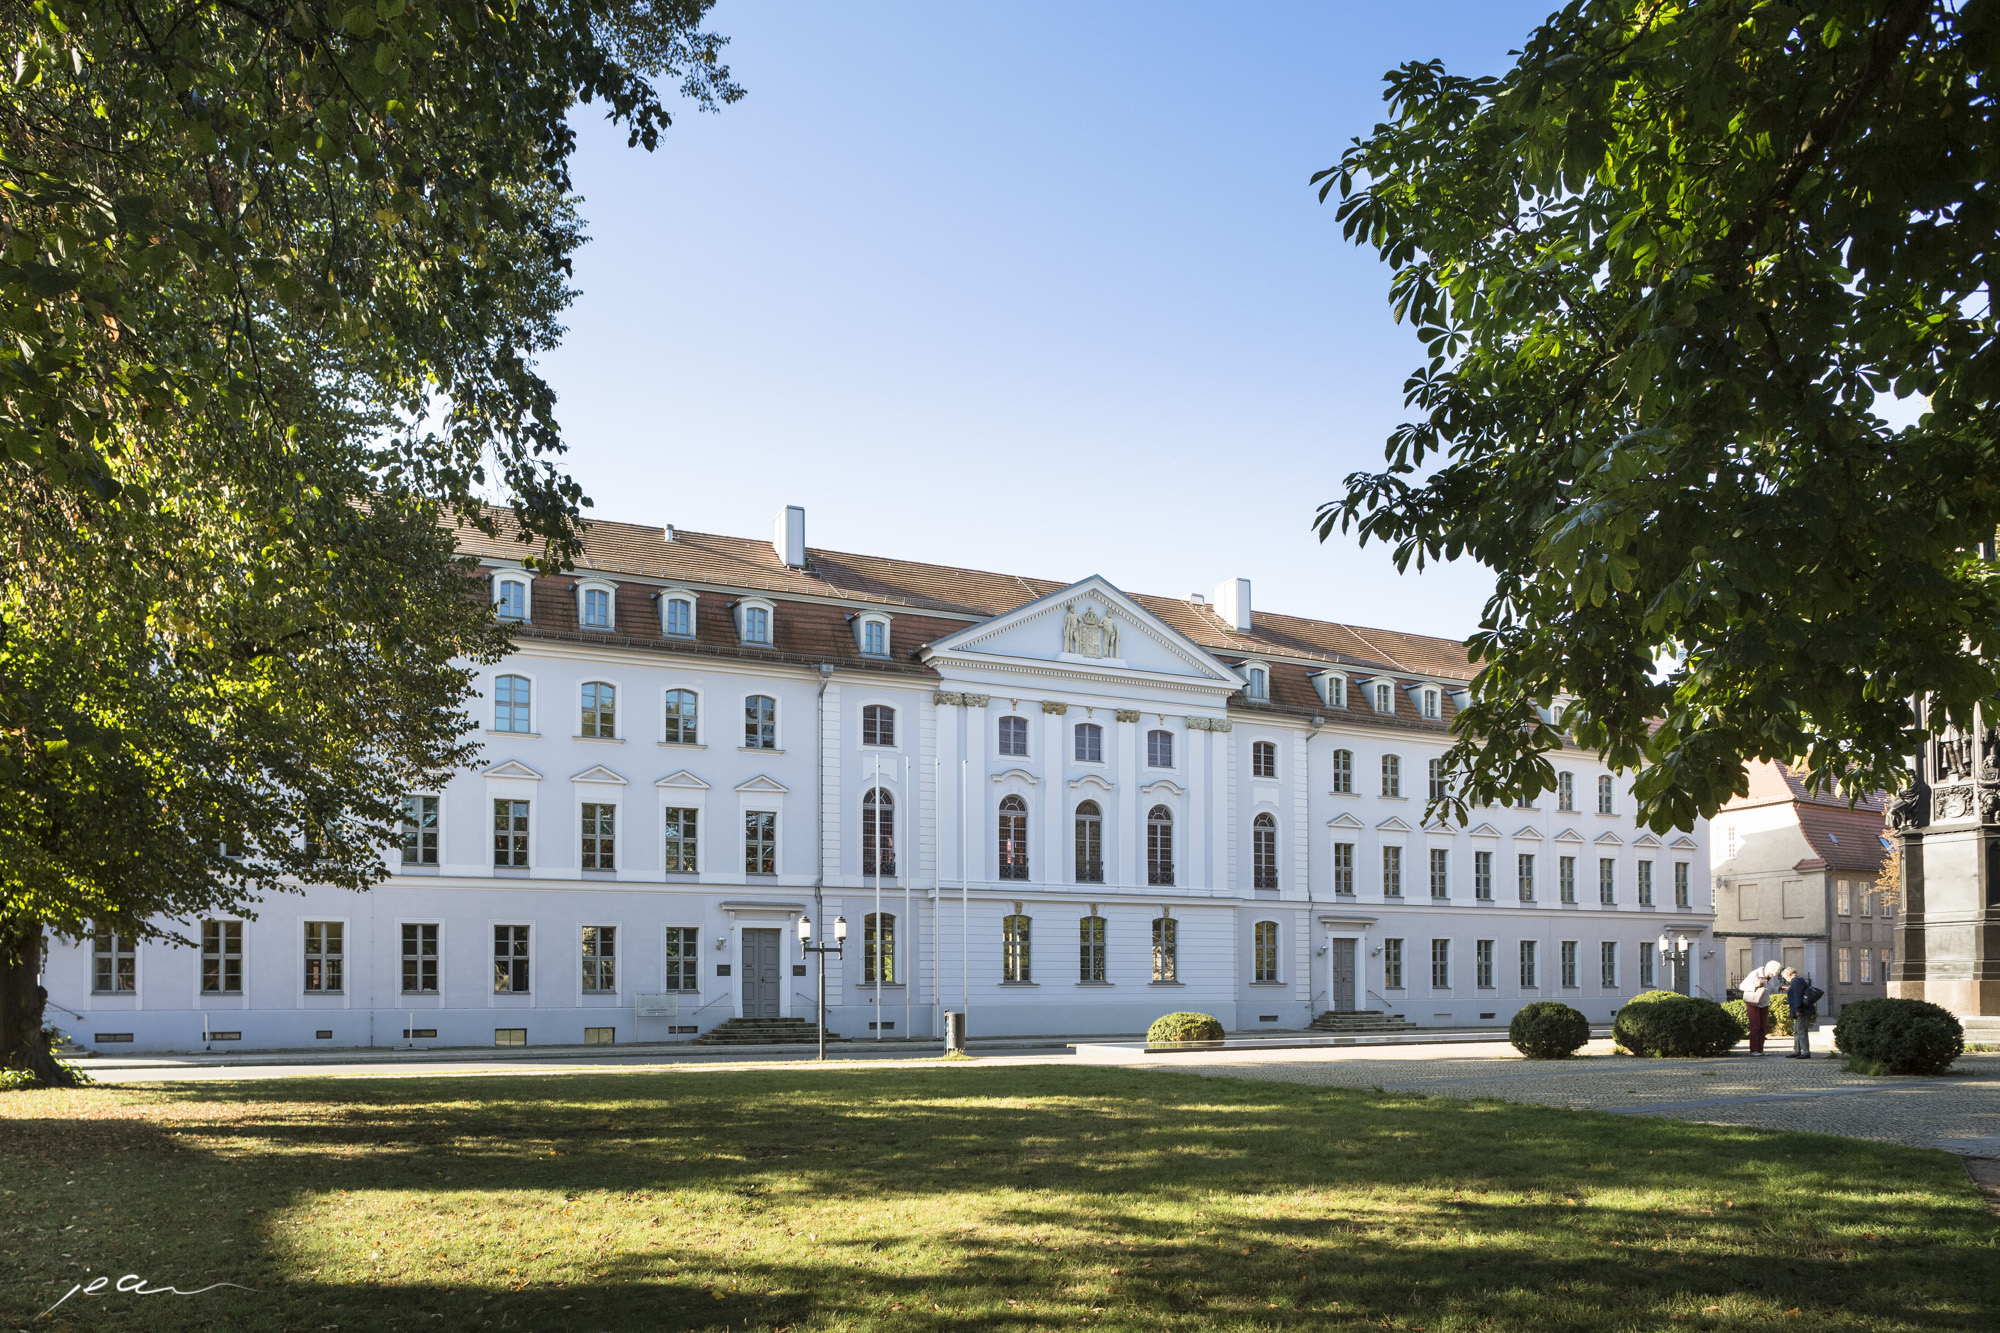 Ausflugstipp, Point of Interest: historische Universität Greifswald, Vorpommern